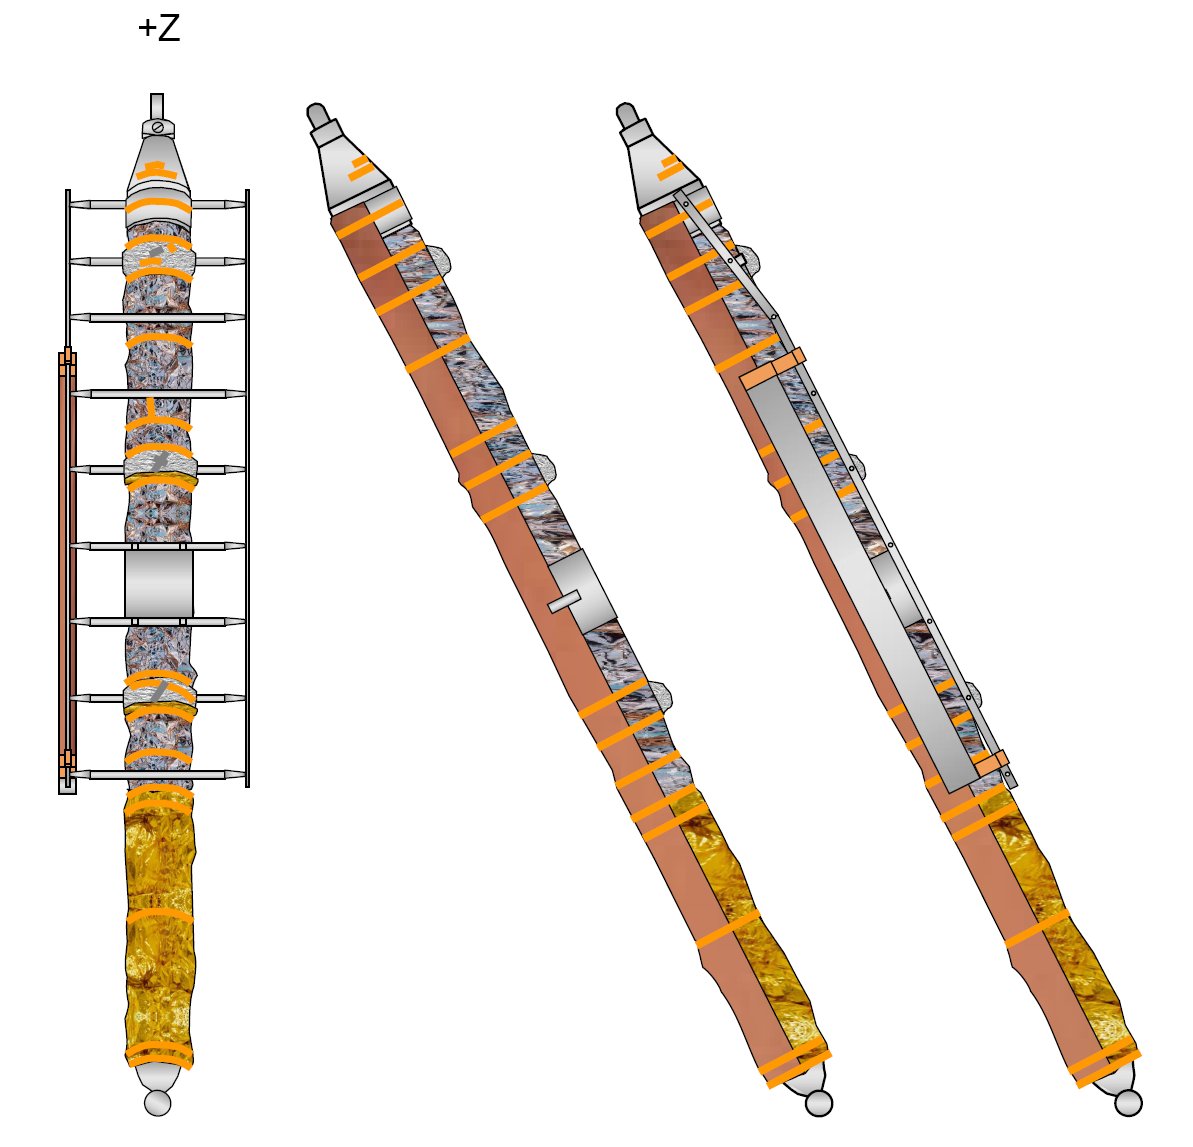 Construction du LM-5 au 1/24 - Création de Lunokhod 2 - Page 2 LM+Z%20landing%20gear